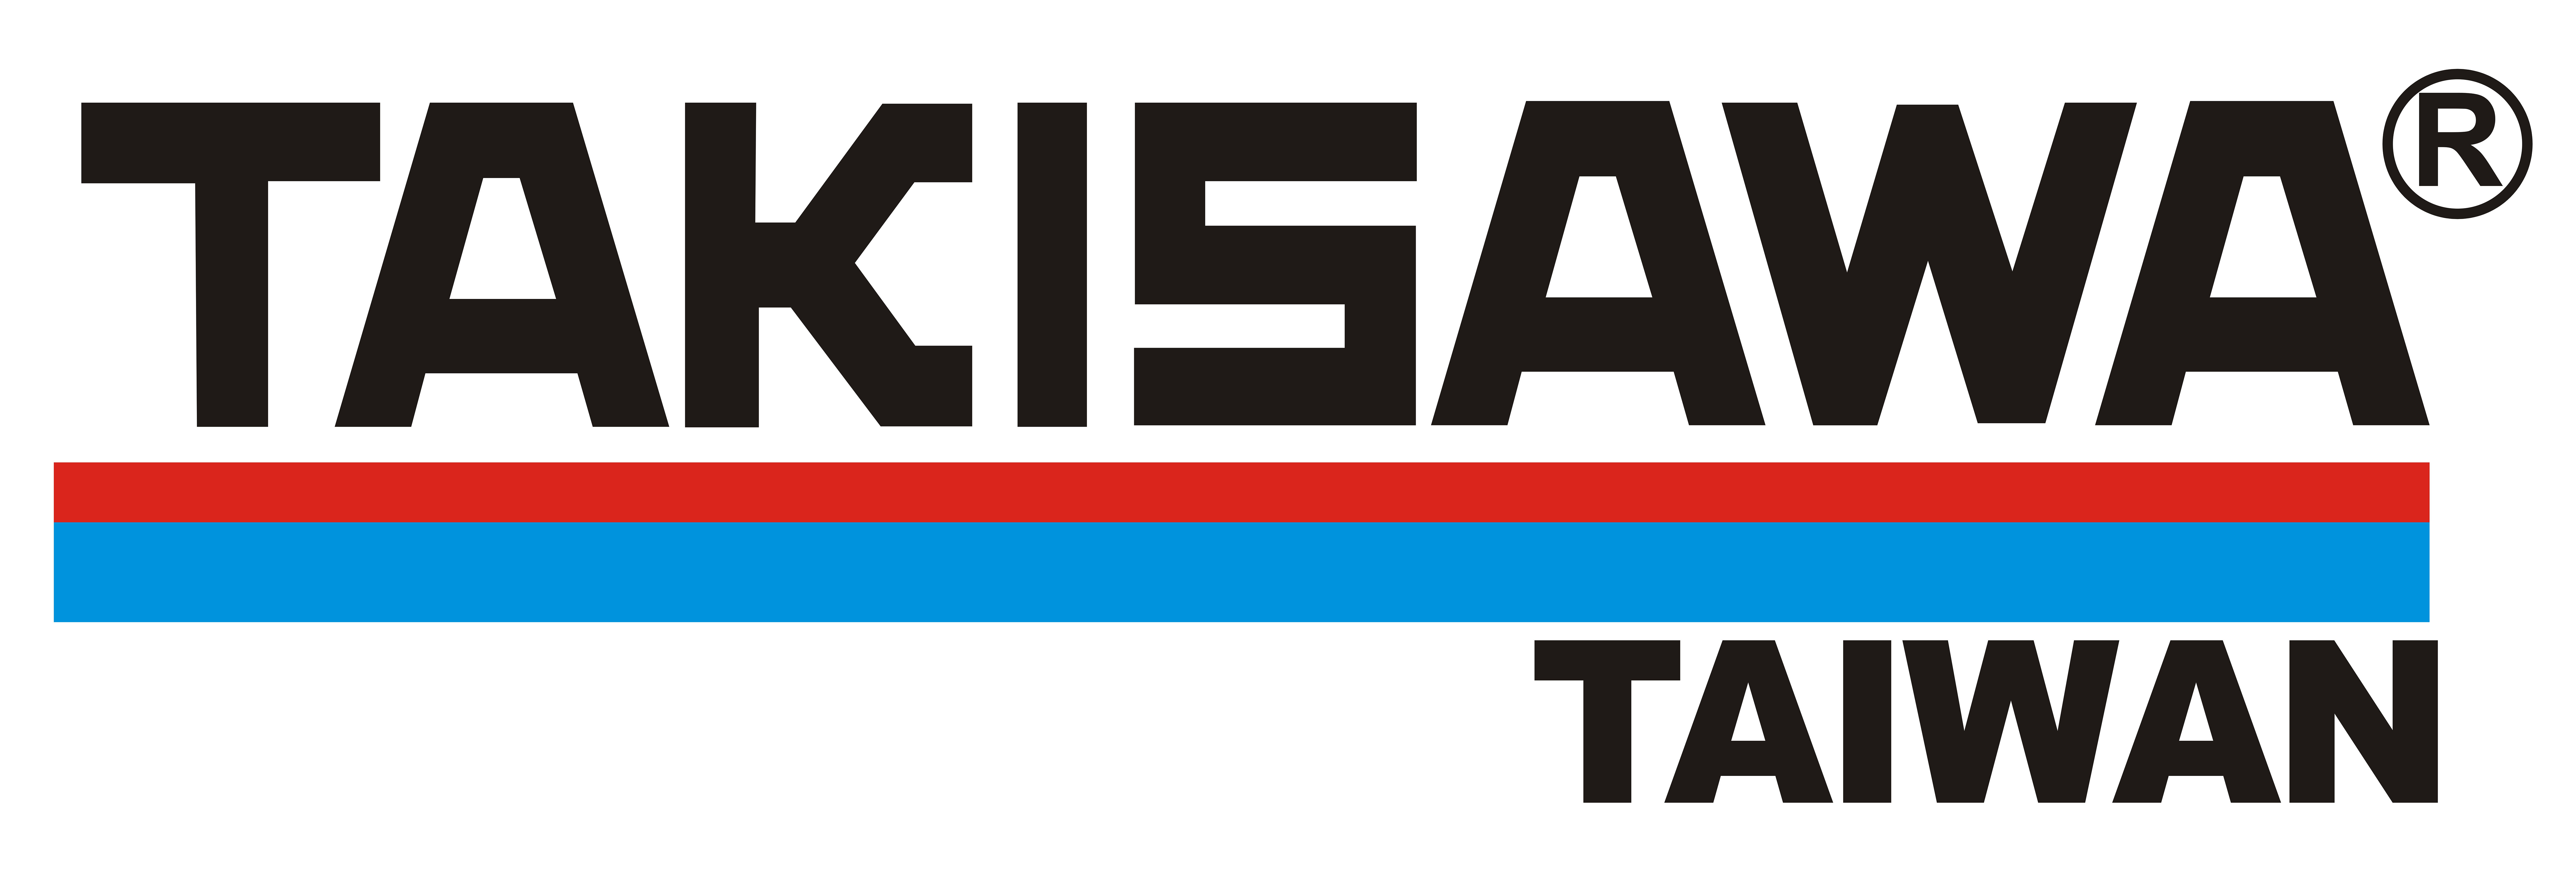 TAIWAN TAKISAWA TECHNOLOGY Co., Ltd-Logo